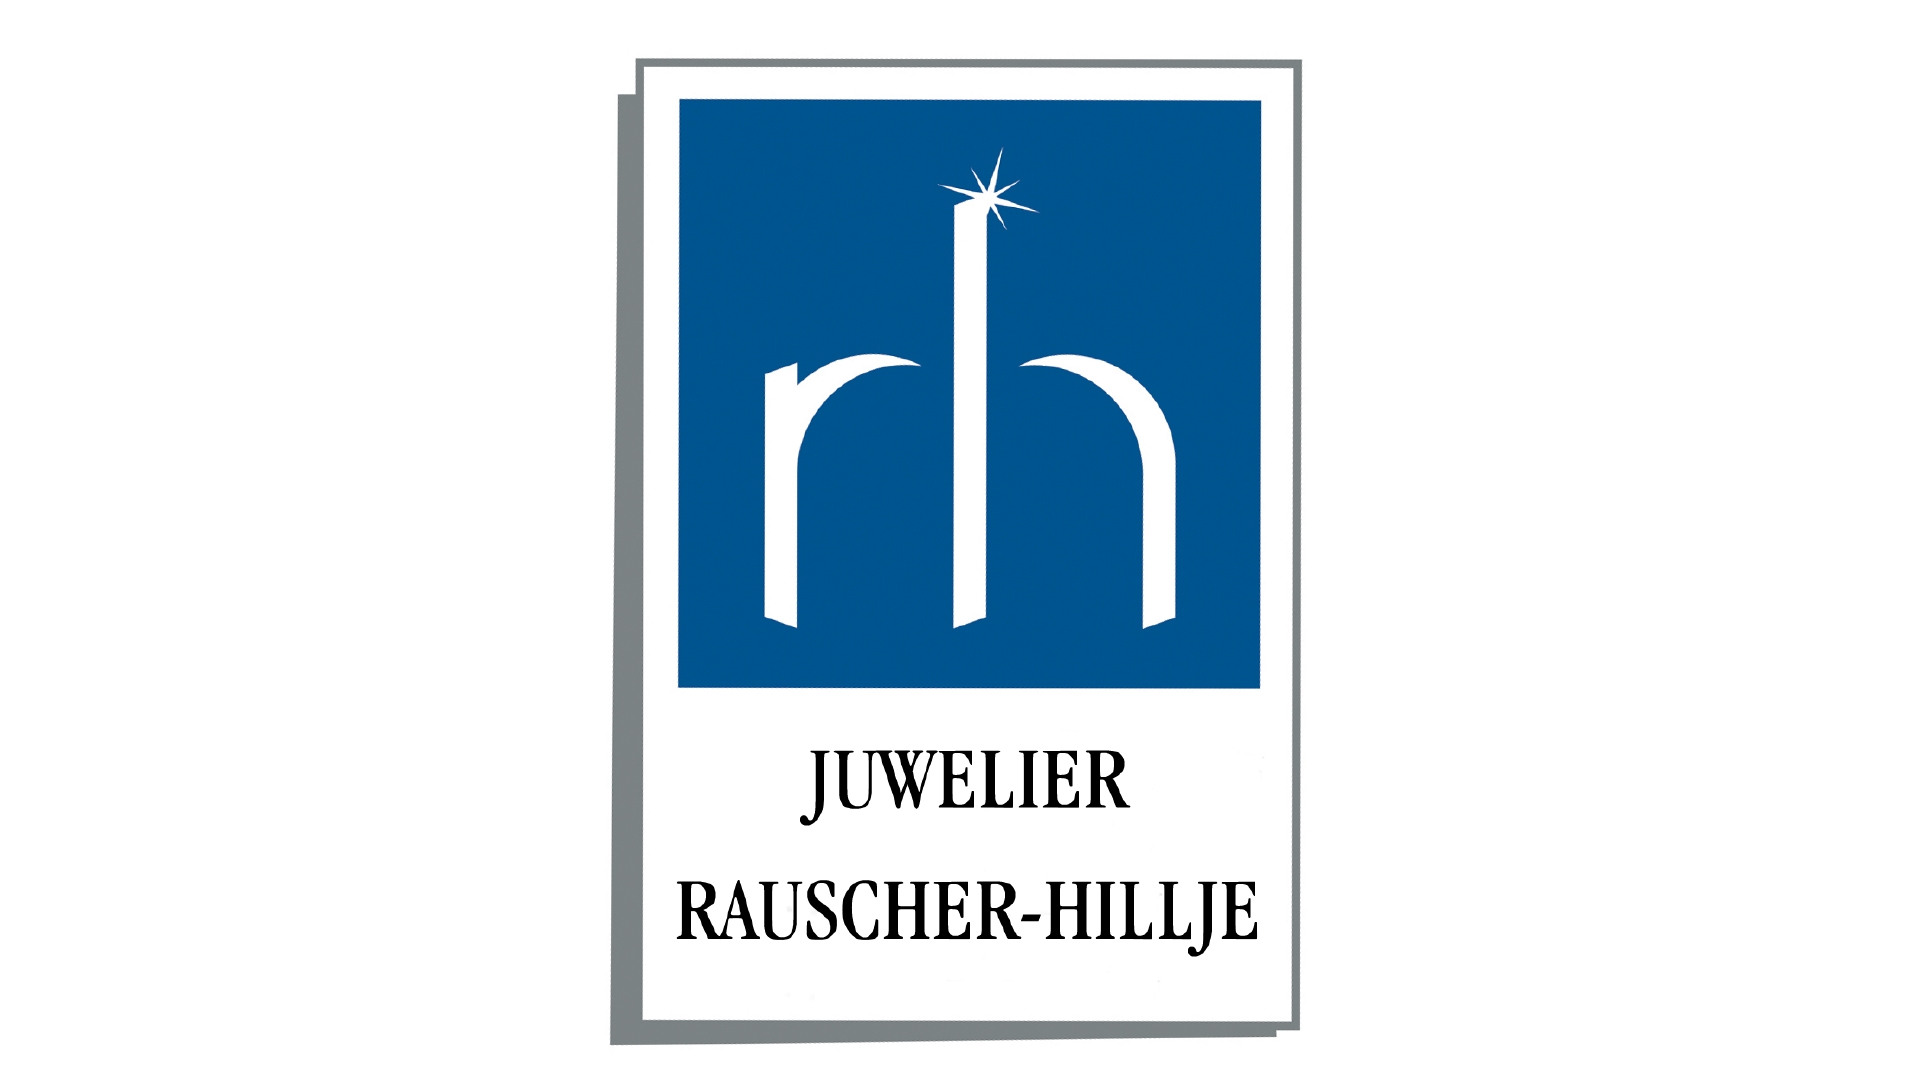 Juwelier Rauscher-Hillje